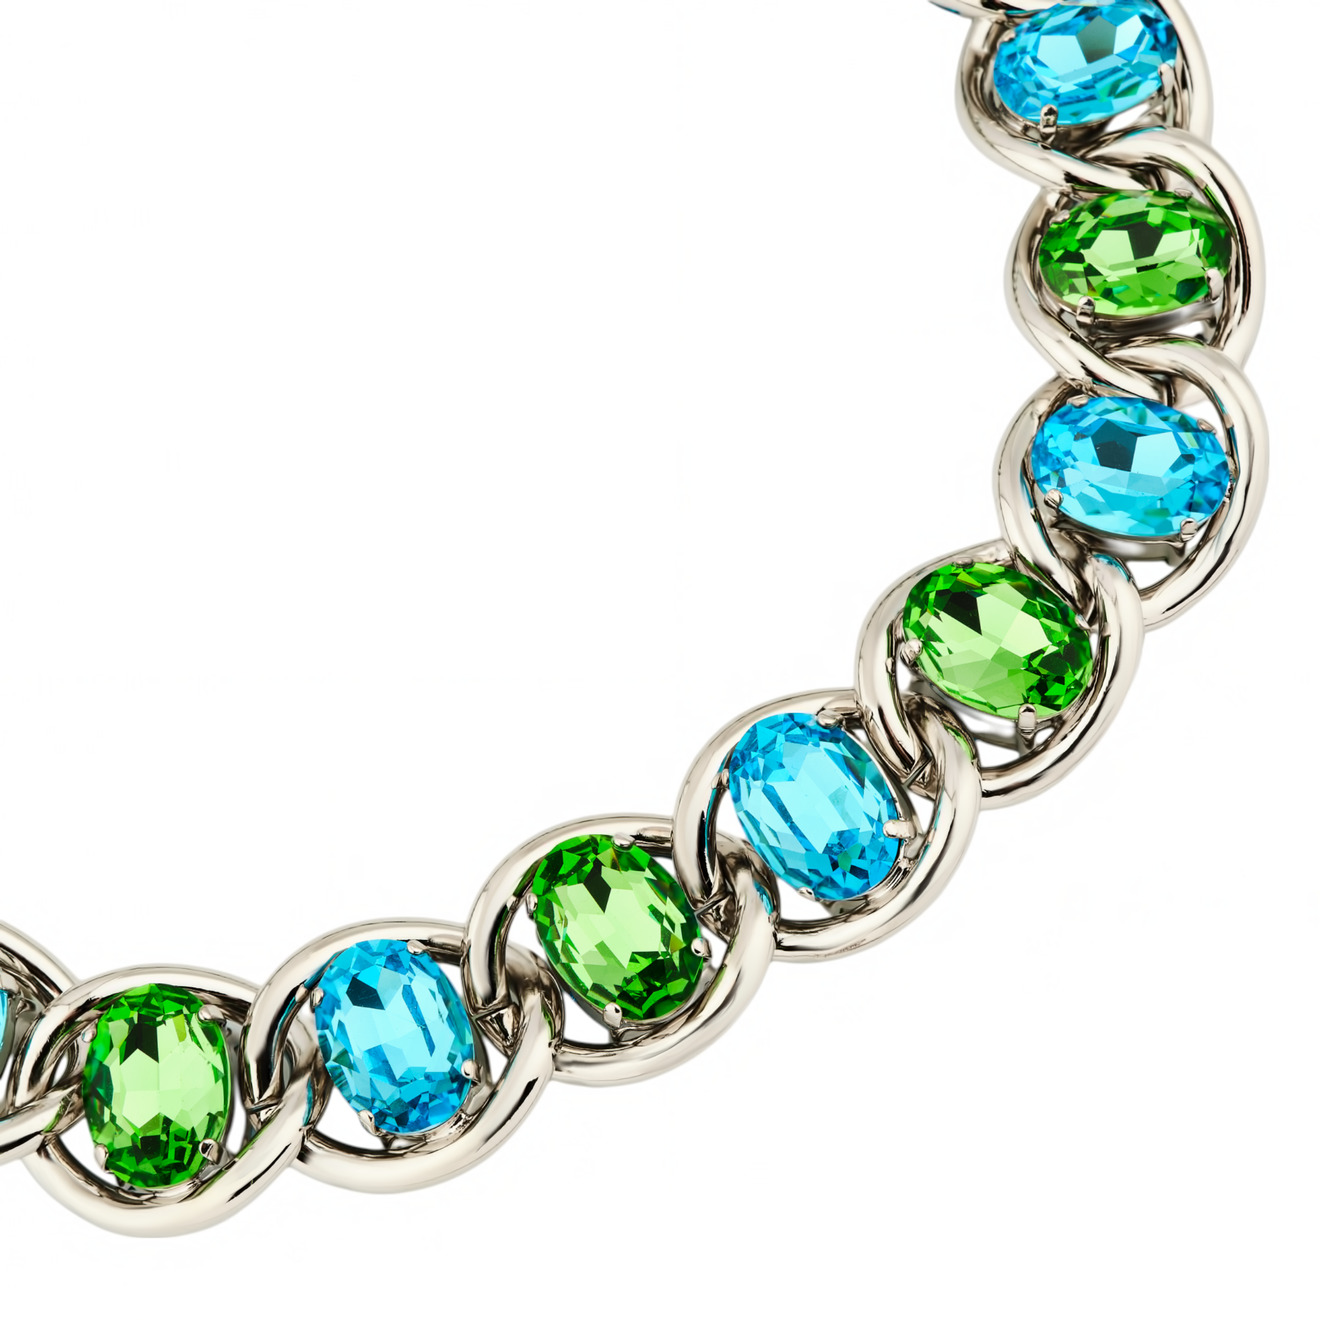 Marni Колье-цепь с зелено-голубыми кристаллами marni серебристое колье цепь с крупными квадратными бусинами marni